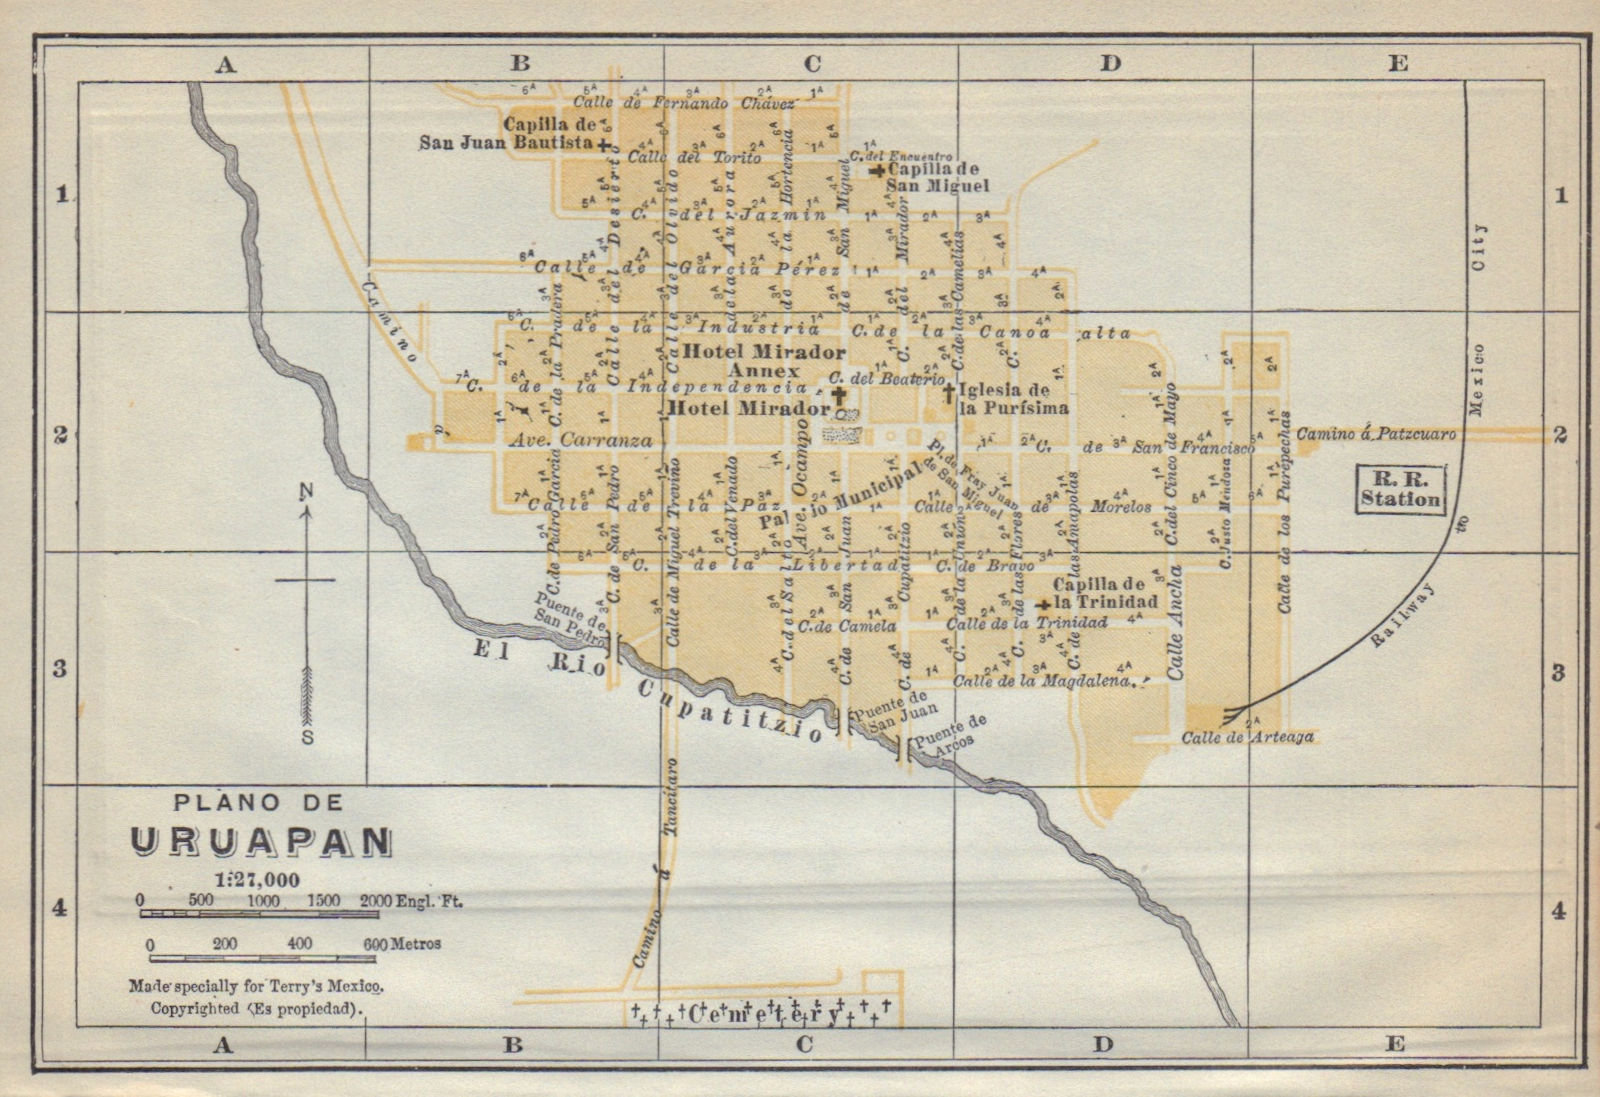 Plano de URUAPAN, Mexico. Mapa de la ciudad. City/town plan 1938 old